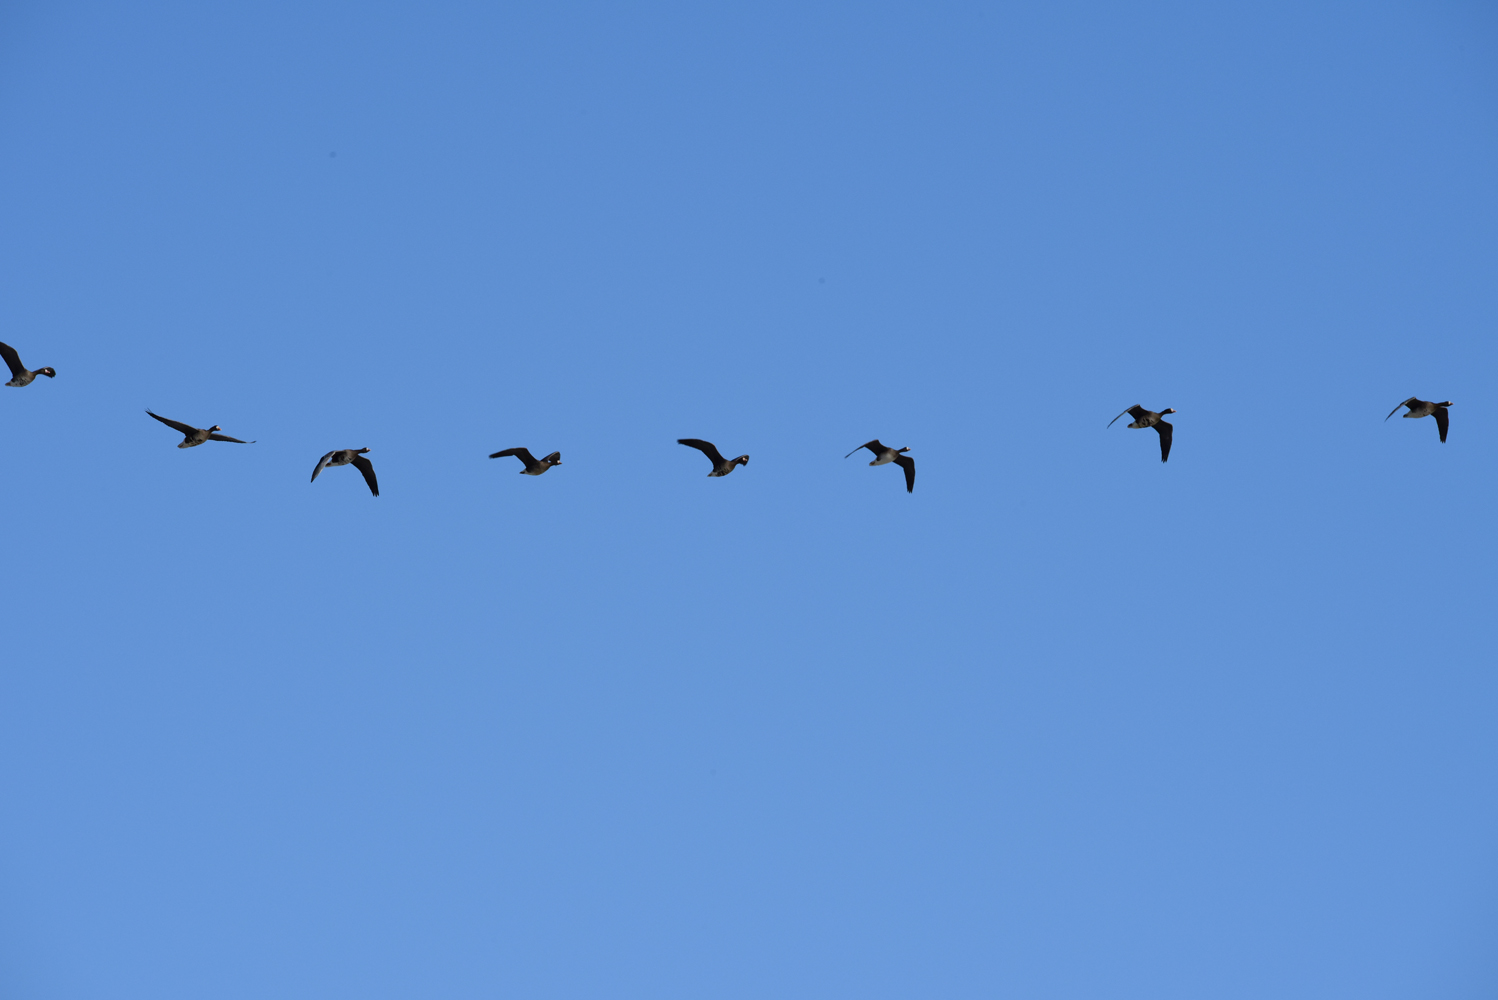 迁徙的大雁，整齐的雁阵，原创摄影